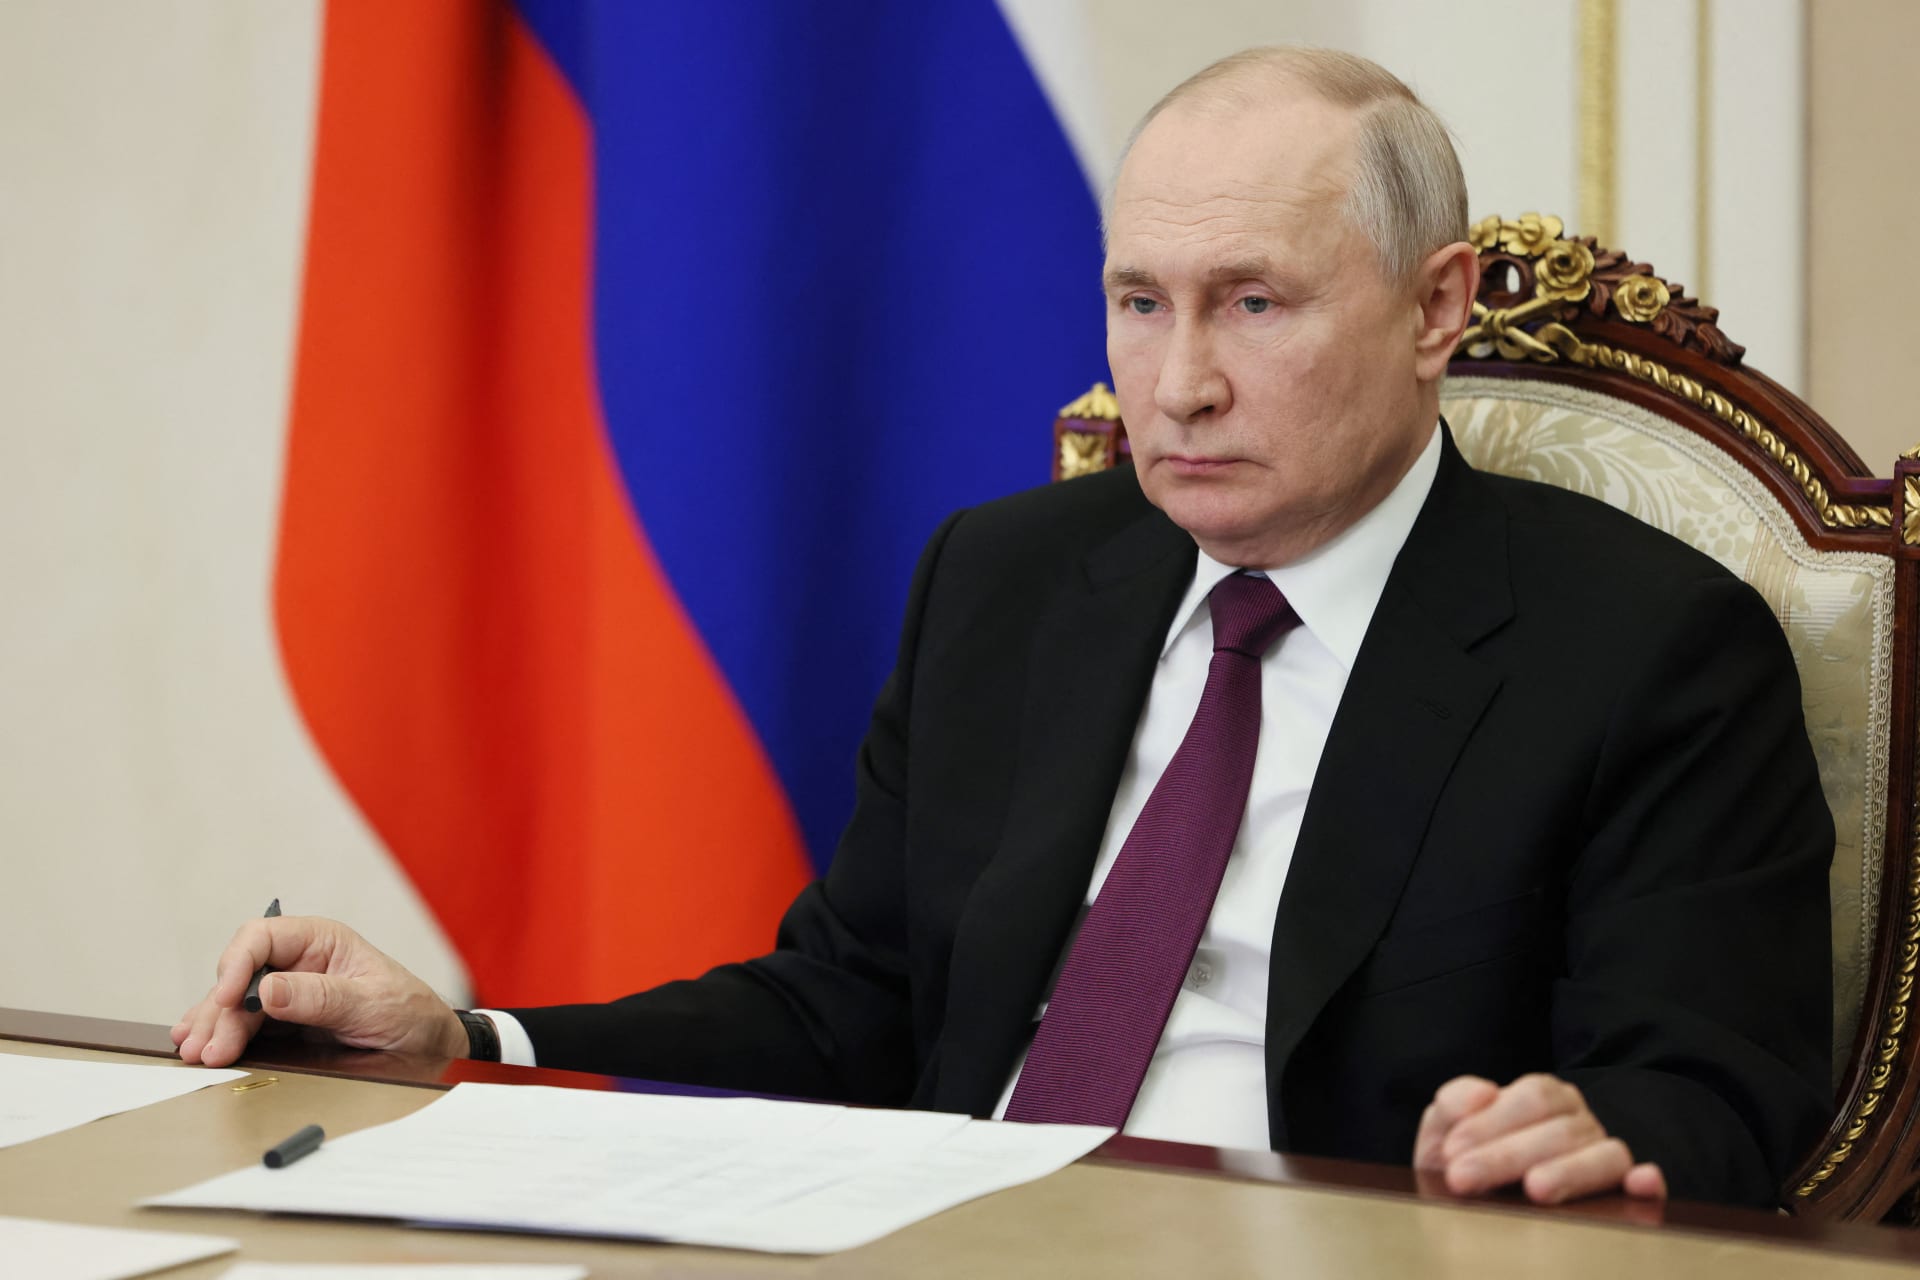 بوتين يوقع مرسوما يسمح للأوكرانيين بالدخول والخروج من روسيا بدون تأشيرة